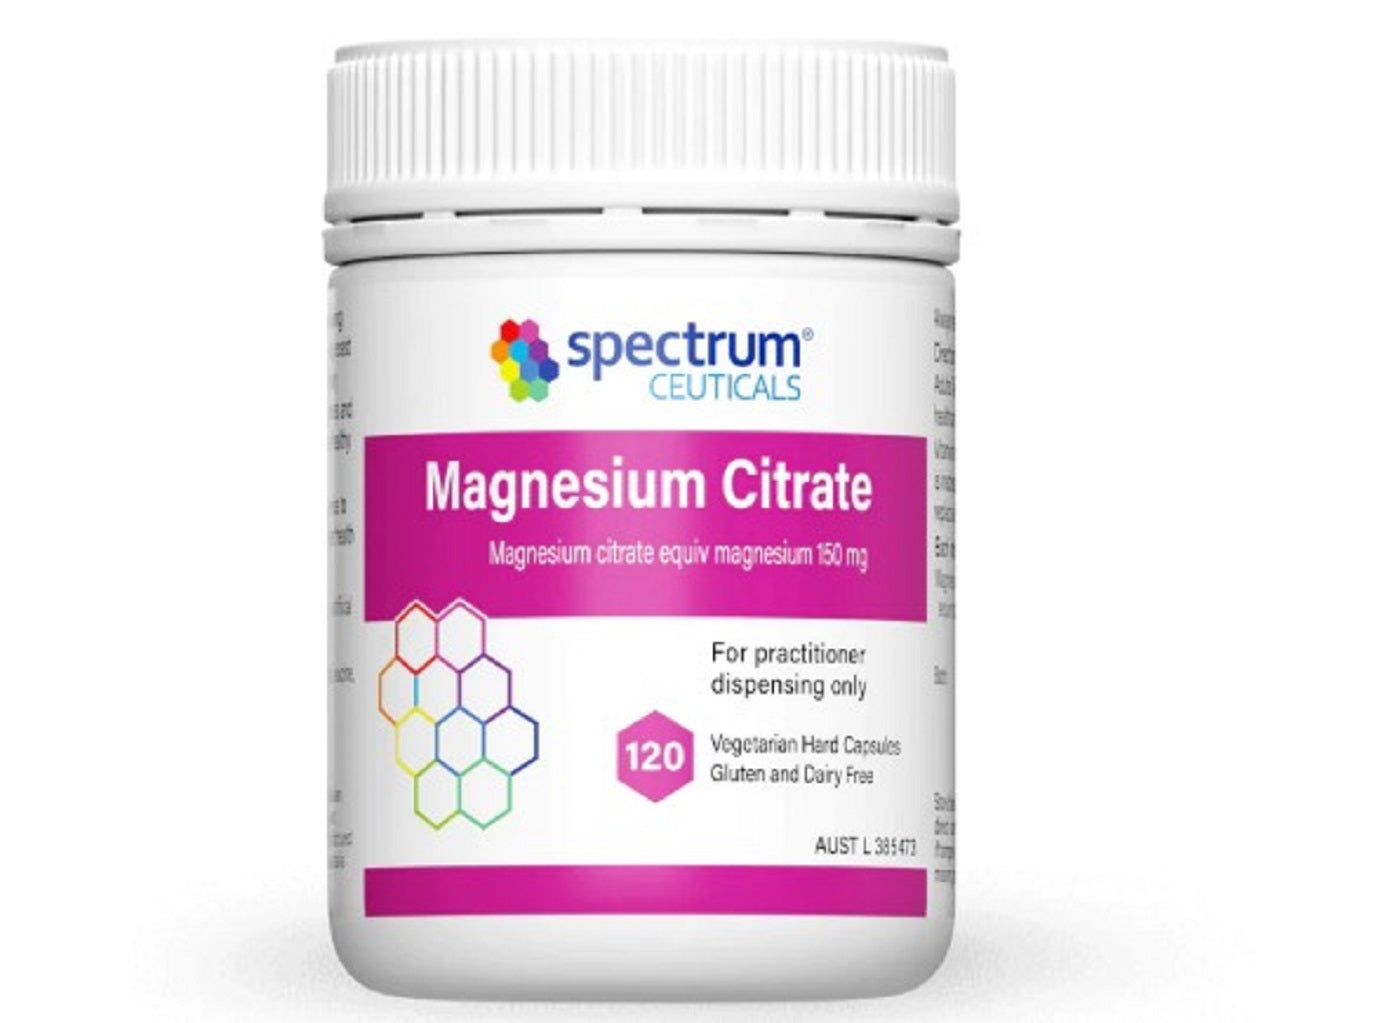 Magnesium Citrate 120 Capsules